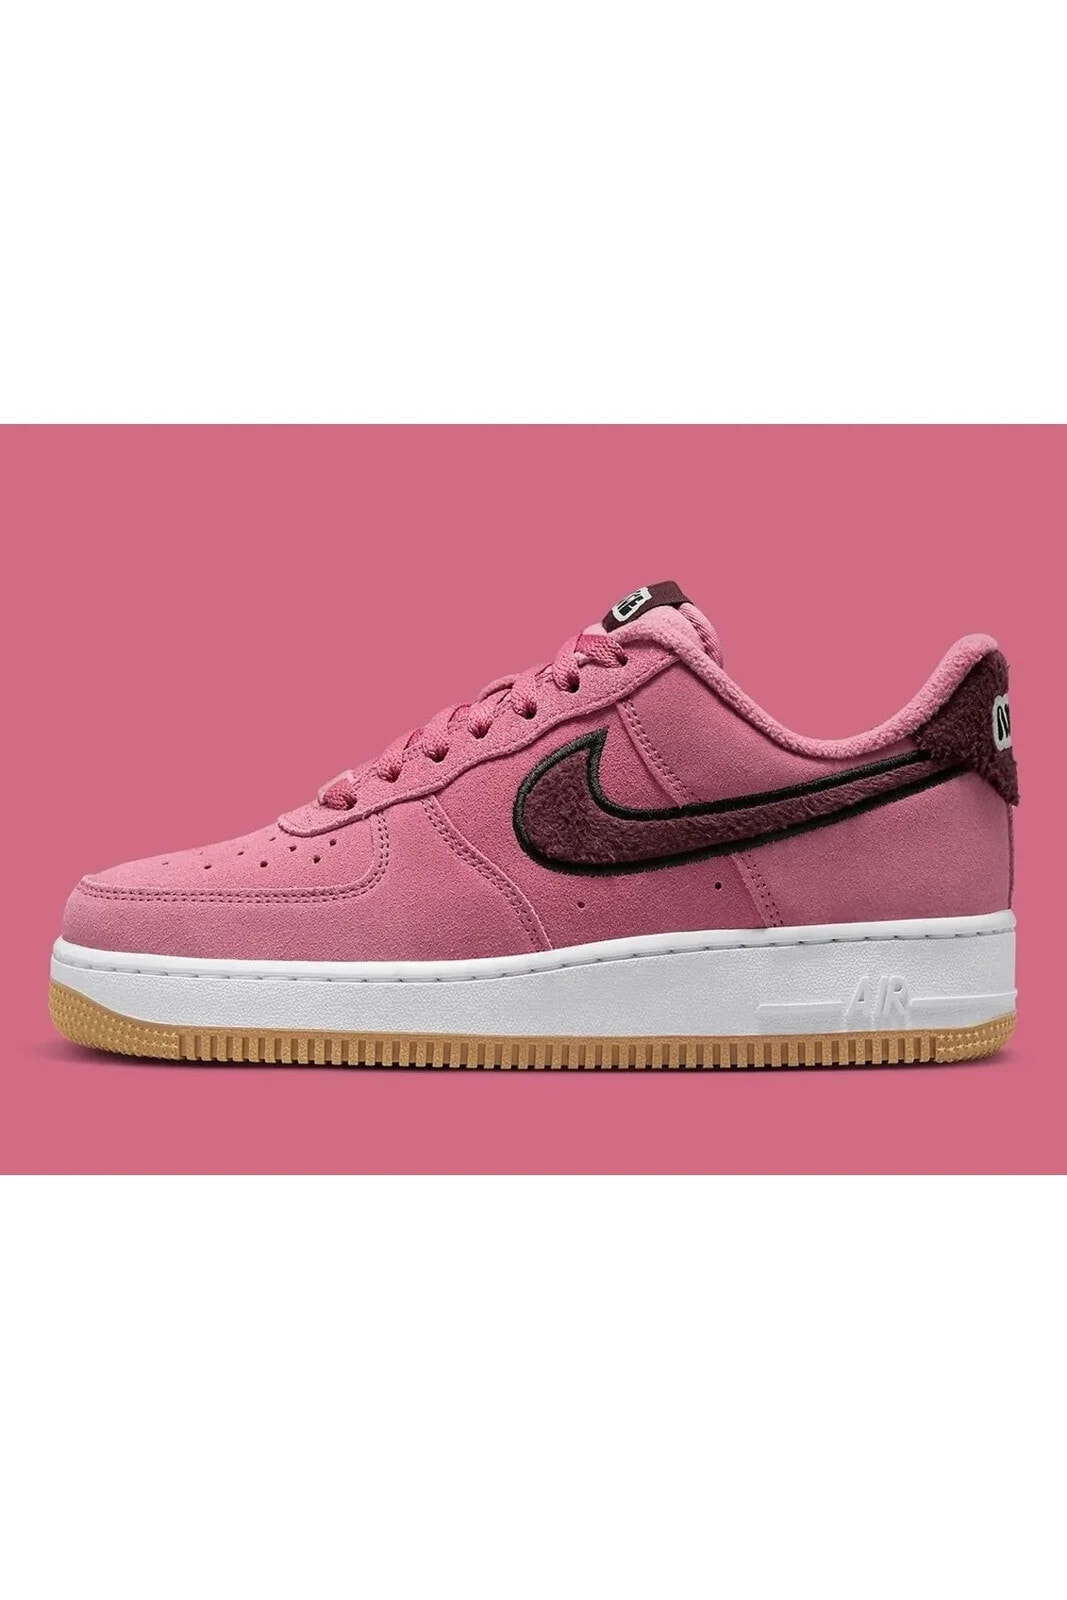 Air Force 1 “Desert Berry” Spor Ayakkabı Sneaker